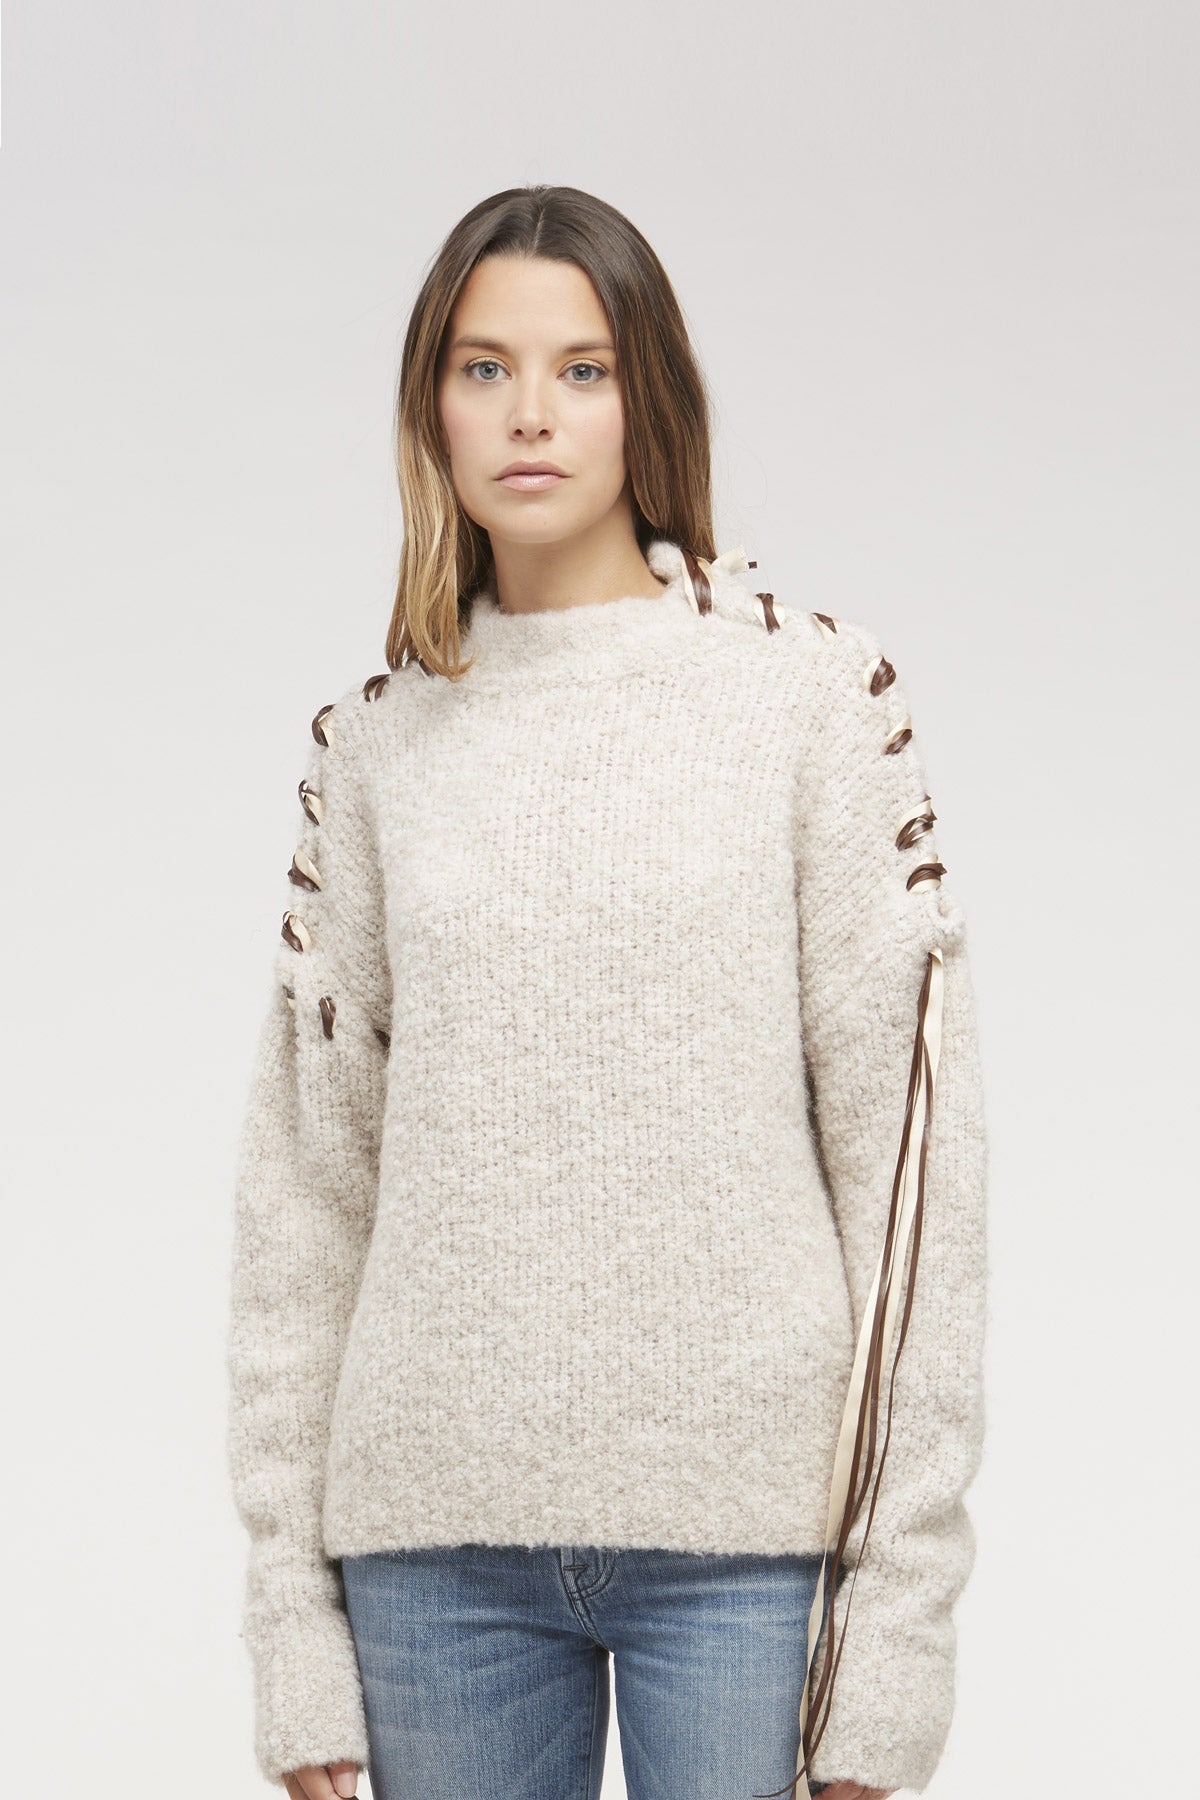 Sehr warmer Herbst-/Winter-Pullover – Damen, hergestellt aus 100 % Made in Italy-Wollmischung: Eleganz und Komfort für Ihre Wintertage! | Brunella Gori